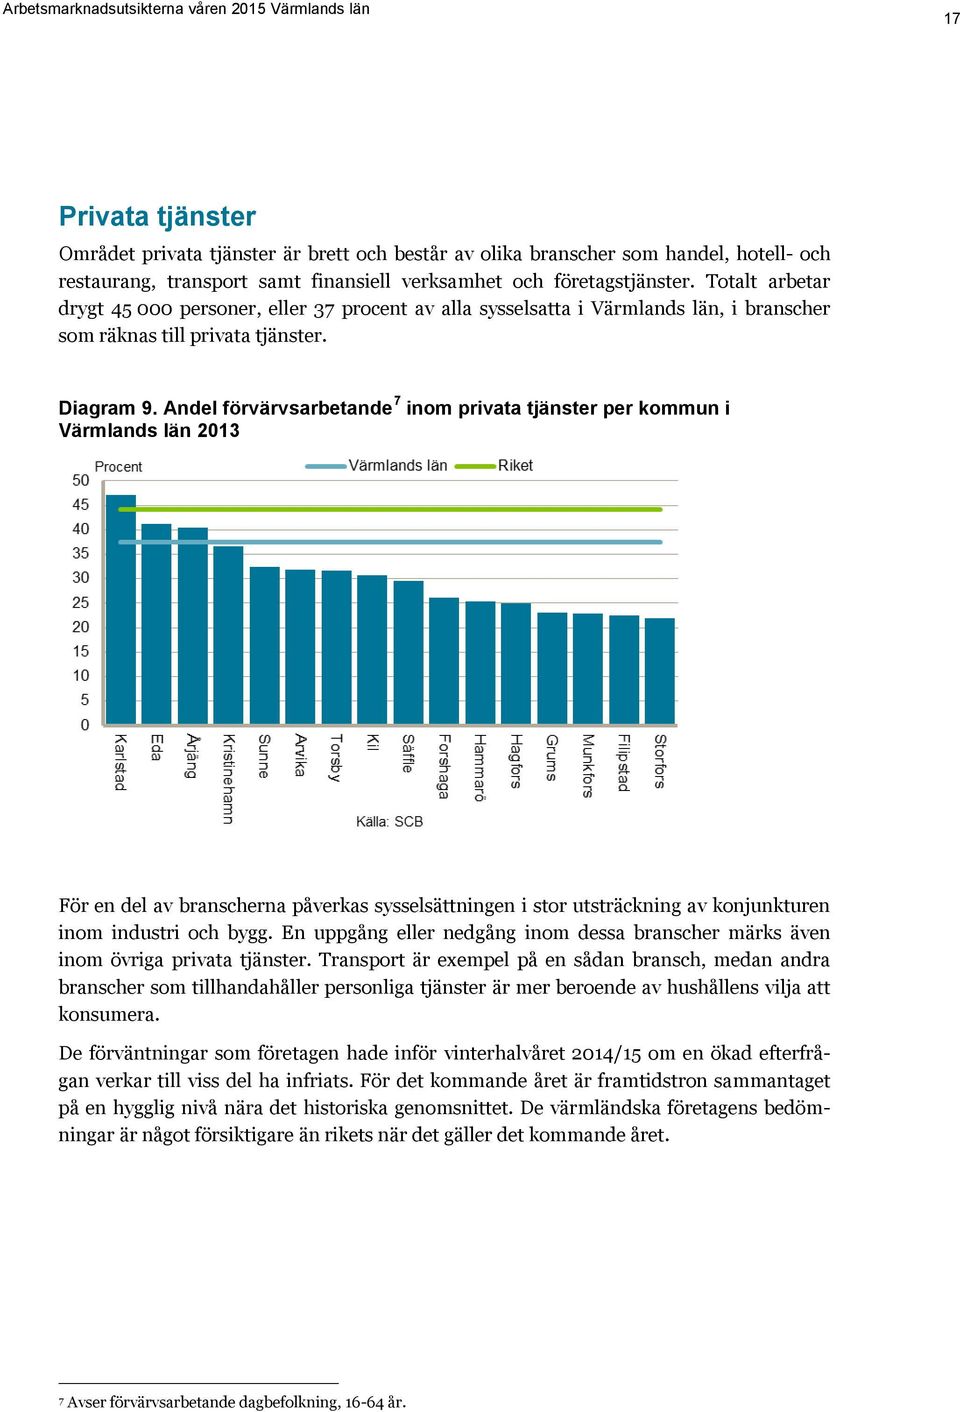 Andel förvärvsarbetande 7 inom privata tjänster per kommun i Värmlands län 2013 För en del av branscherna påverkas sysselsättningen i stor utsträckning av konjunkturen inom industri och bygg.